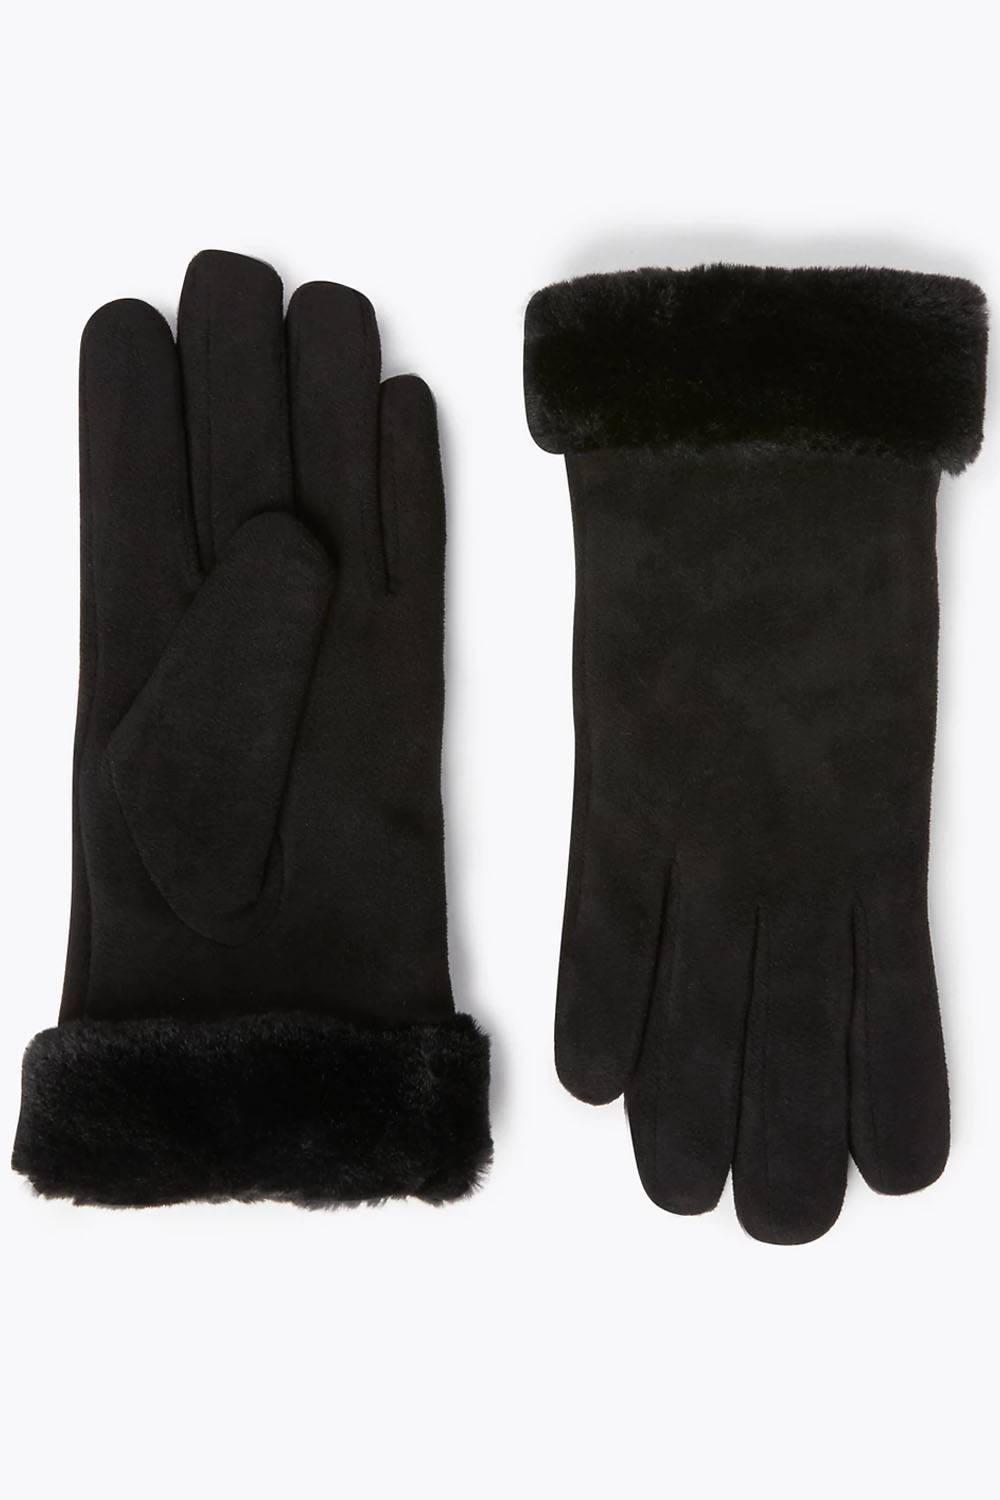 marks spencer vegan leather gloves